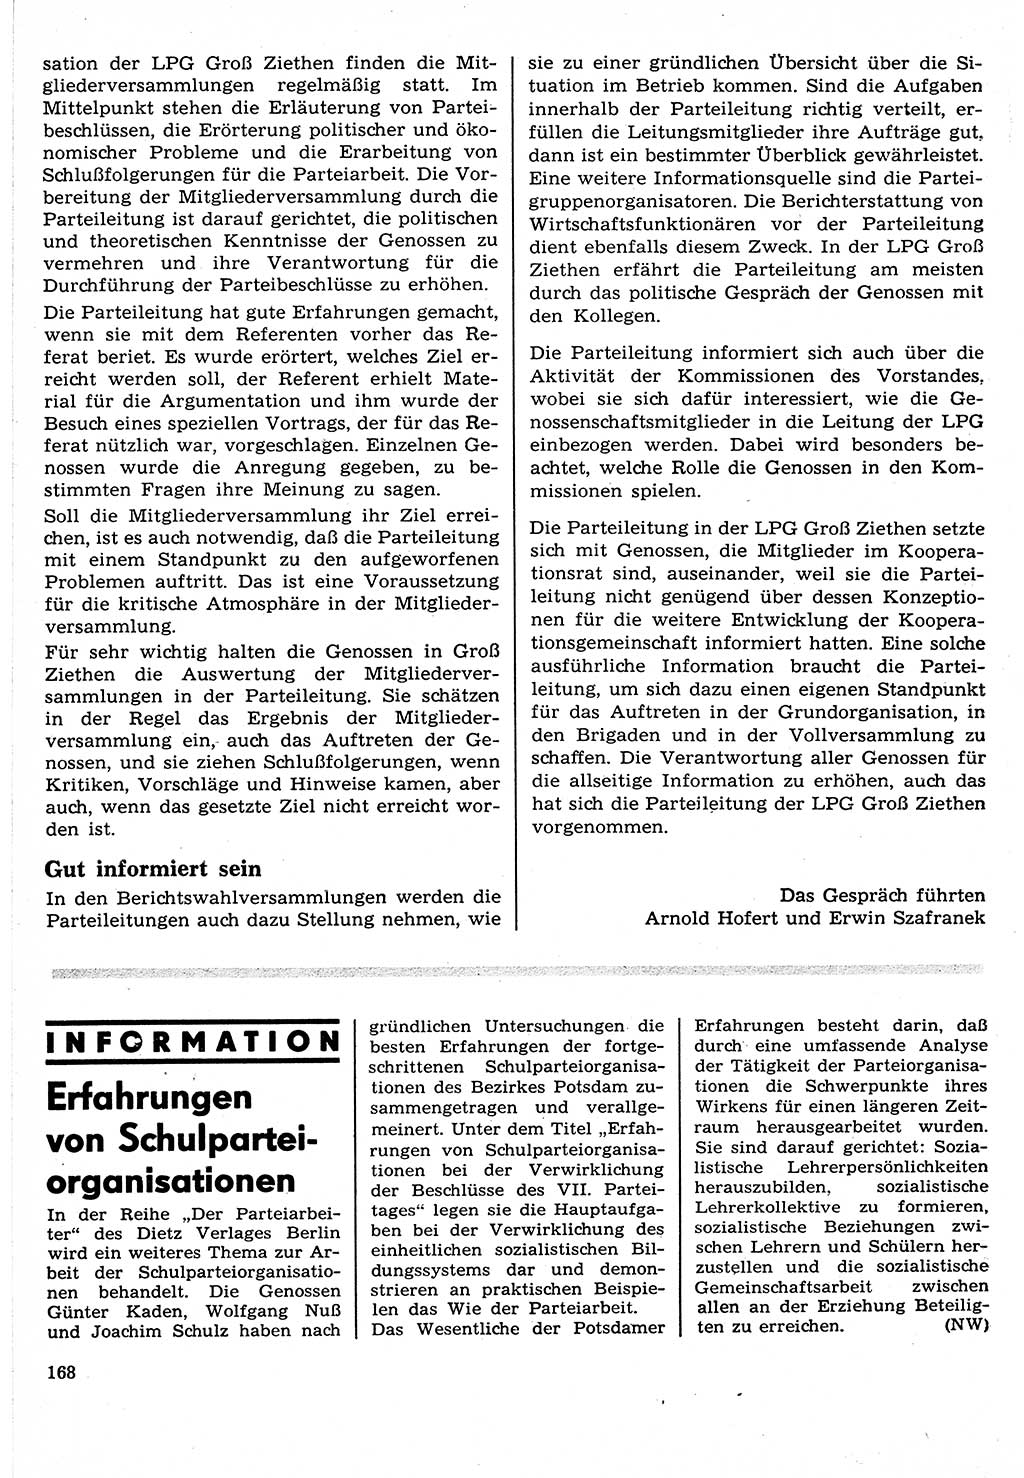 Neuer Weg (NW), Organ des Zentralkomitees (ZK) der SED (Sozialistische Einheitspartei Deutschlands) für Fragen des Parteilebens, 24. Jahrgang [Deutsche Demokratische Republik (DDR)] 1969, Seite 168 (NW ZK SED DDR 1969, S. 168)